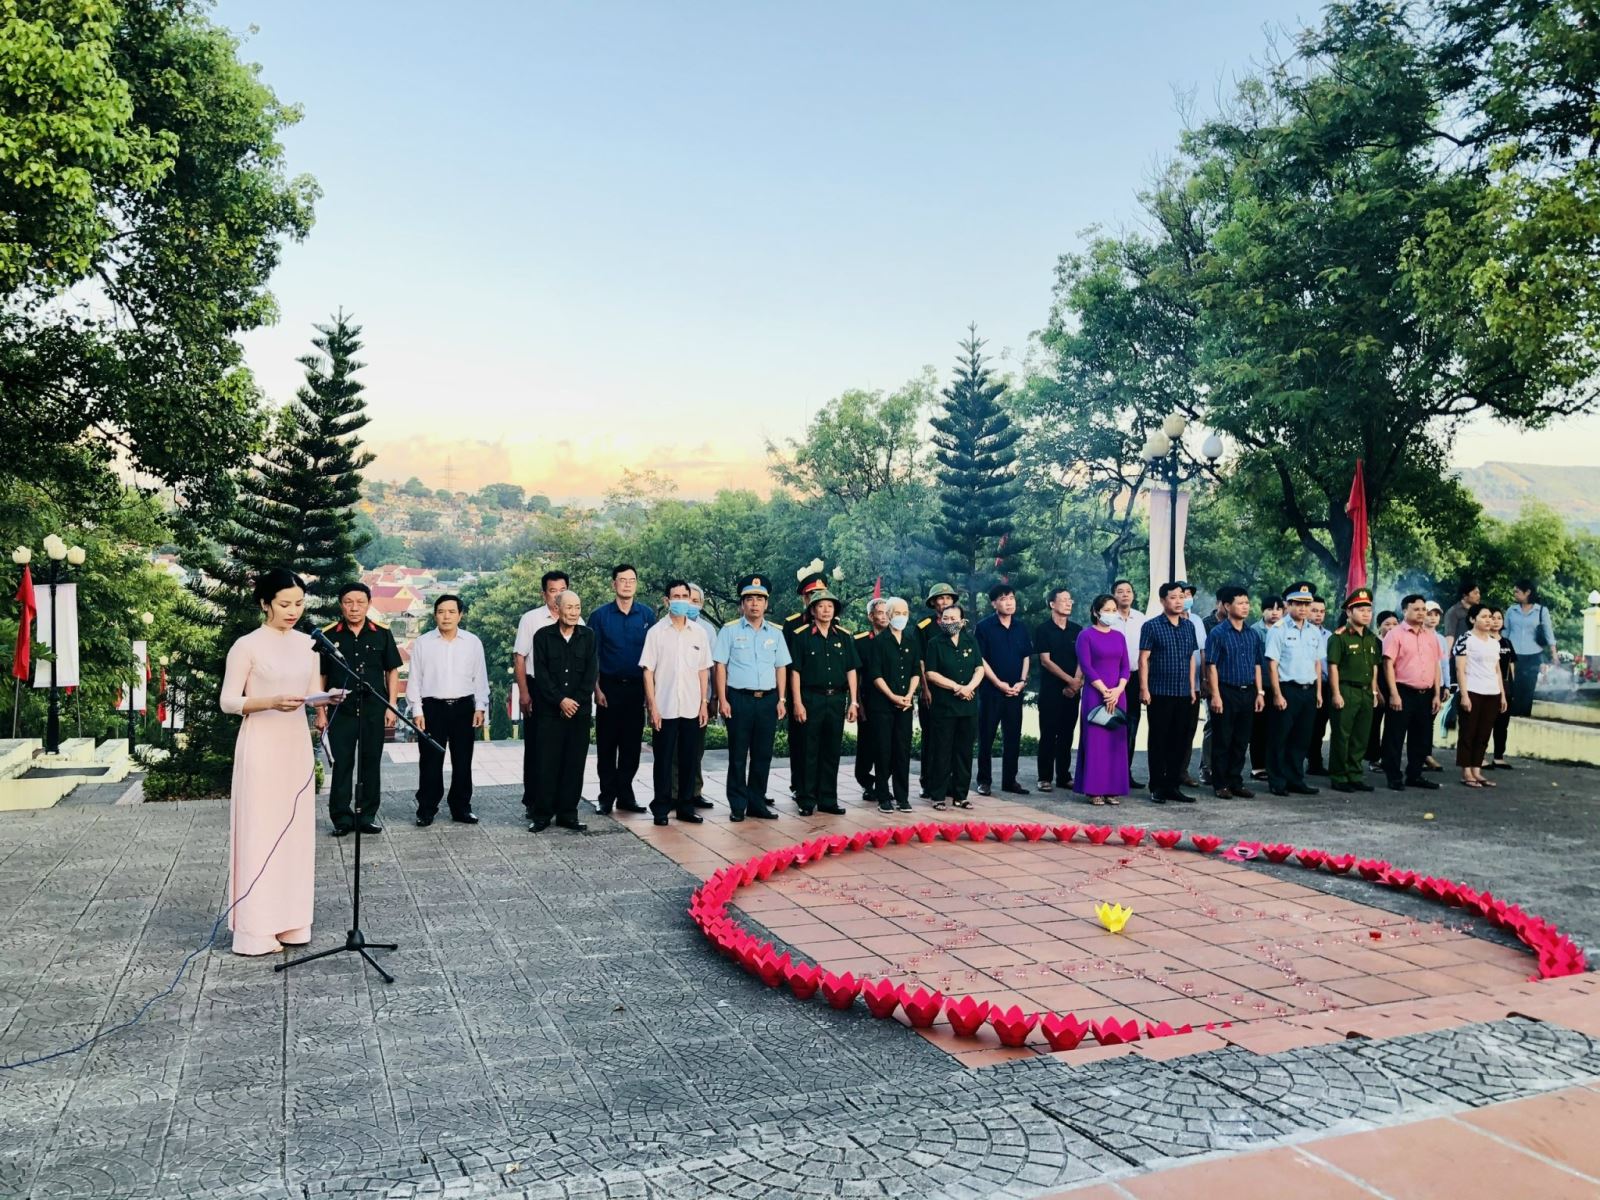 Đồng chí Nguyễn Lê Phương - Bí thư Đảng uỷ, Chủ tịch UBND phường bày tỏ lòng biết ơn và tri ân, tưởng nhớ công ơn của những anh hùng liệt sĩ